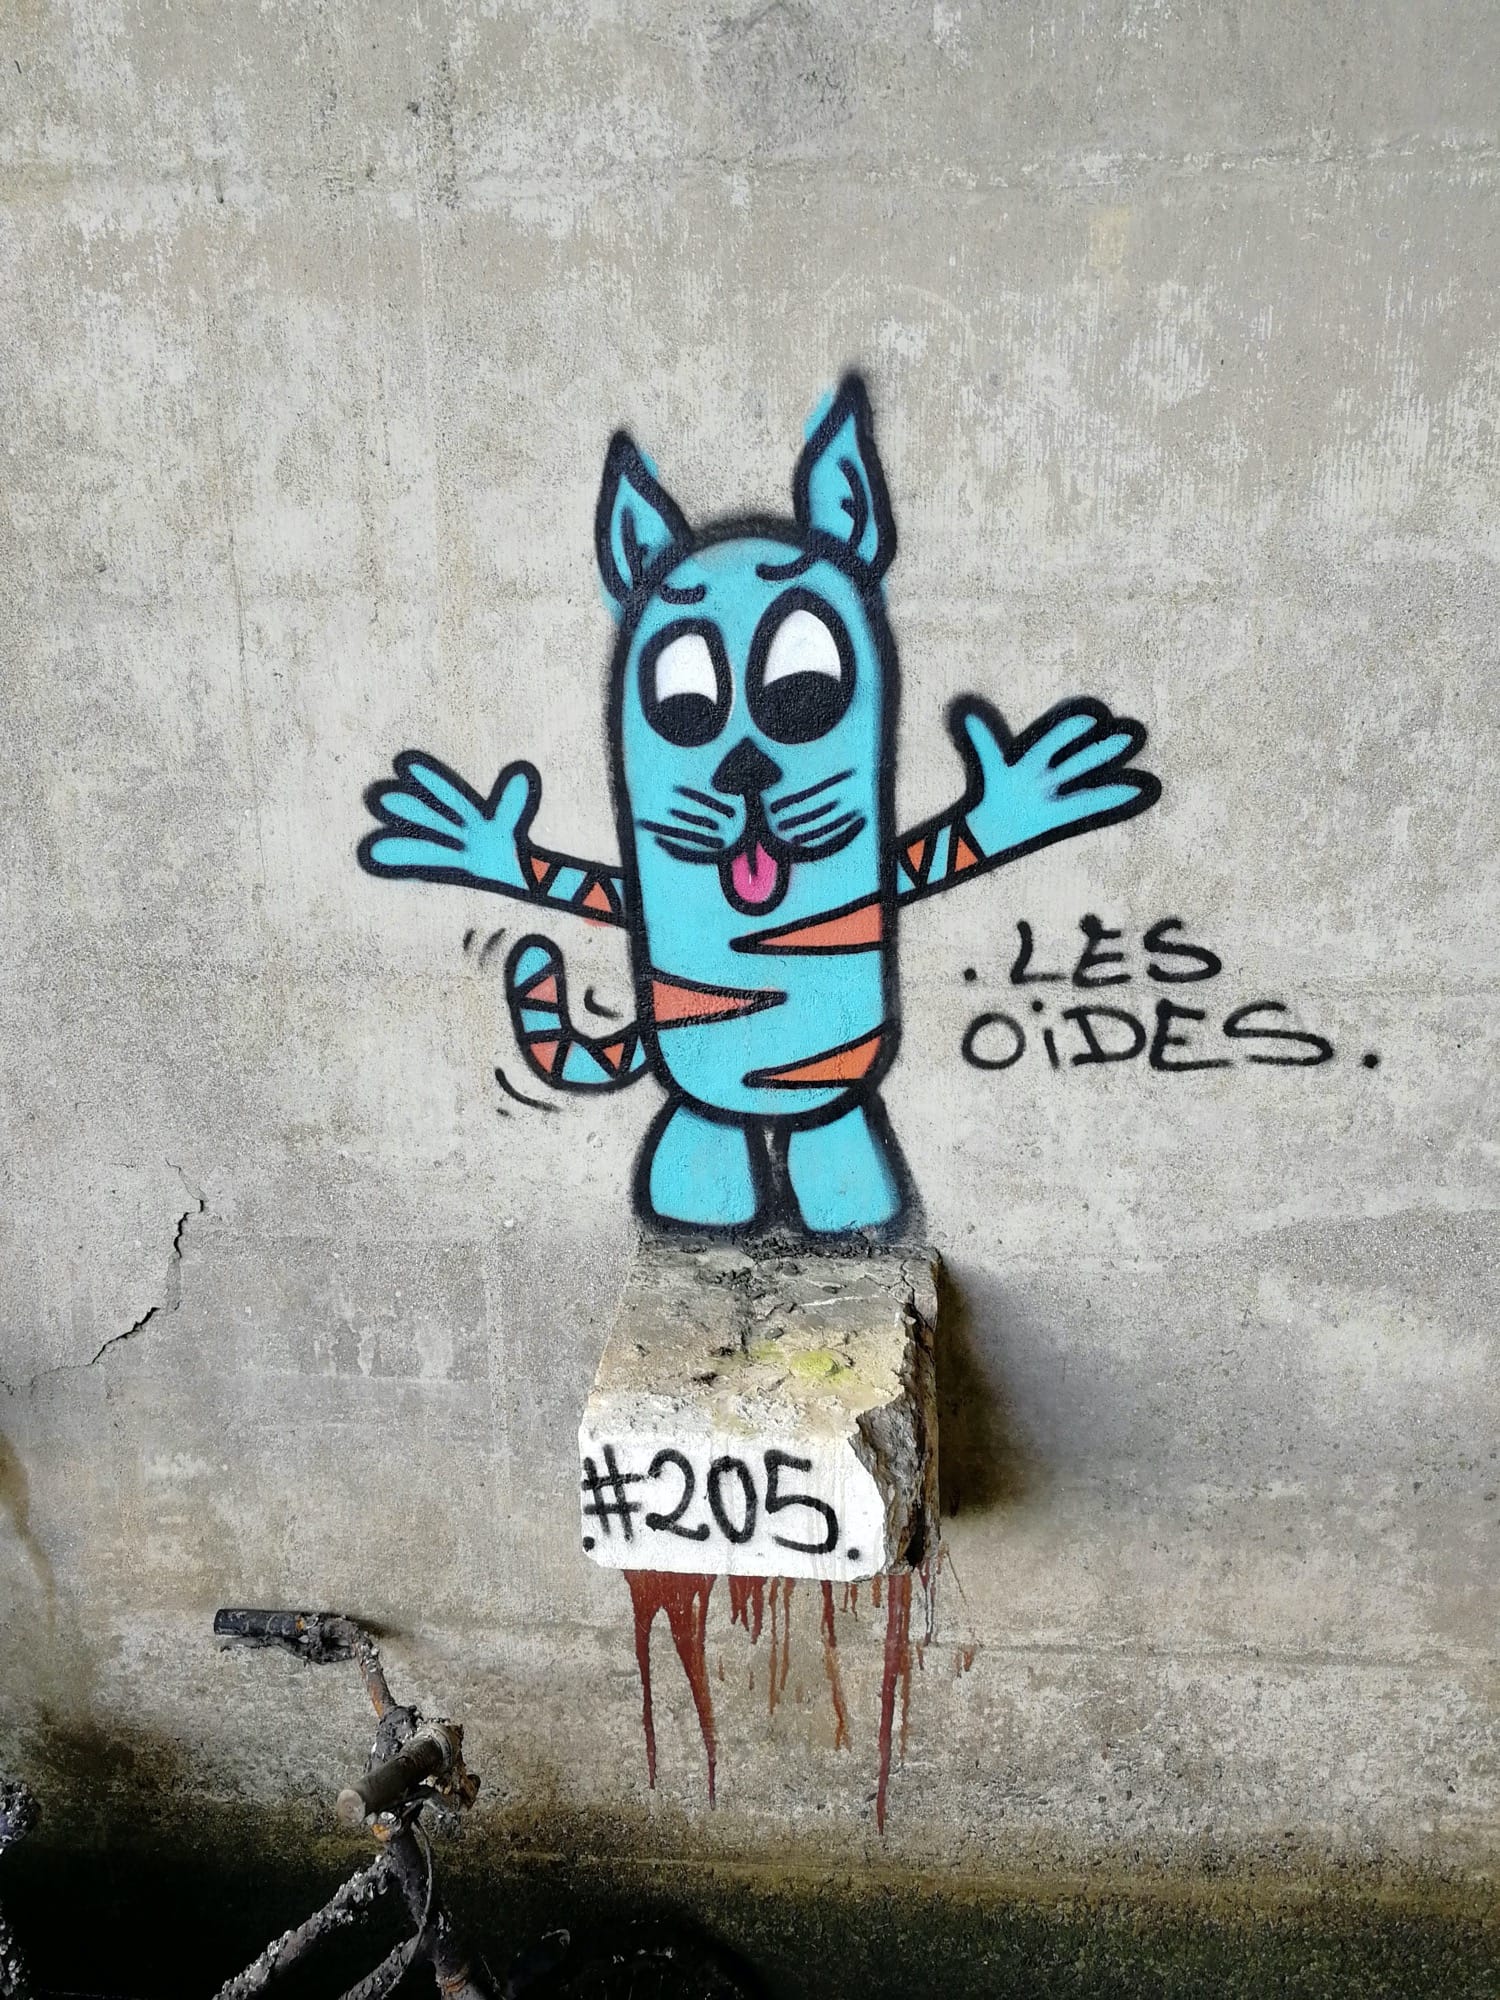 Graffiti 1318 Les oides #205 de Les Oides capturé par Rabot à Montoir-de-Bretagne France